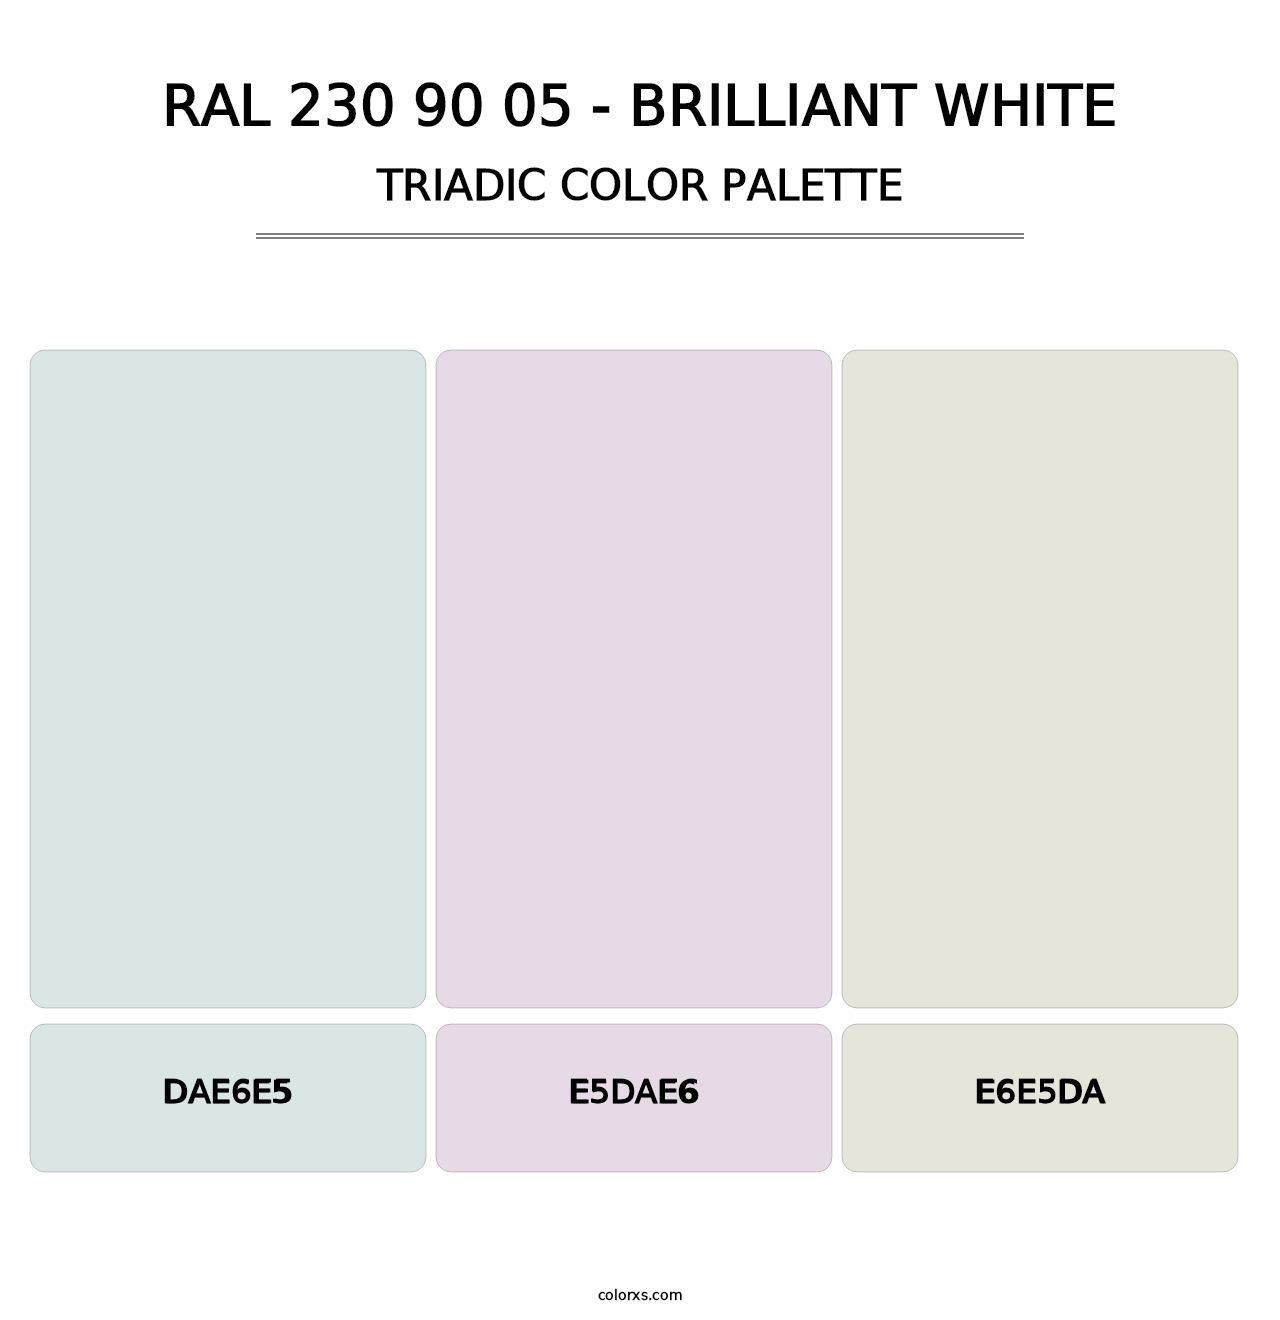 RAL 230 90 05 - Brilliant White - Triadic Color Palette